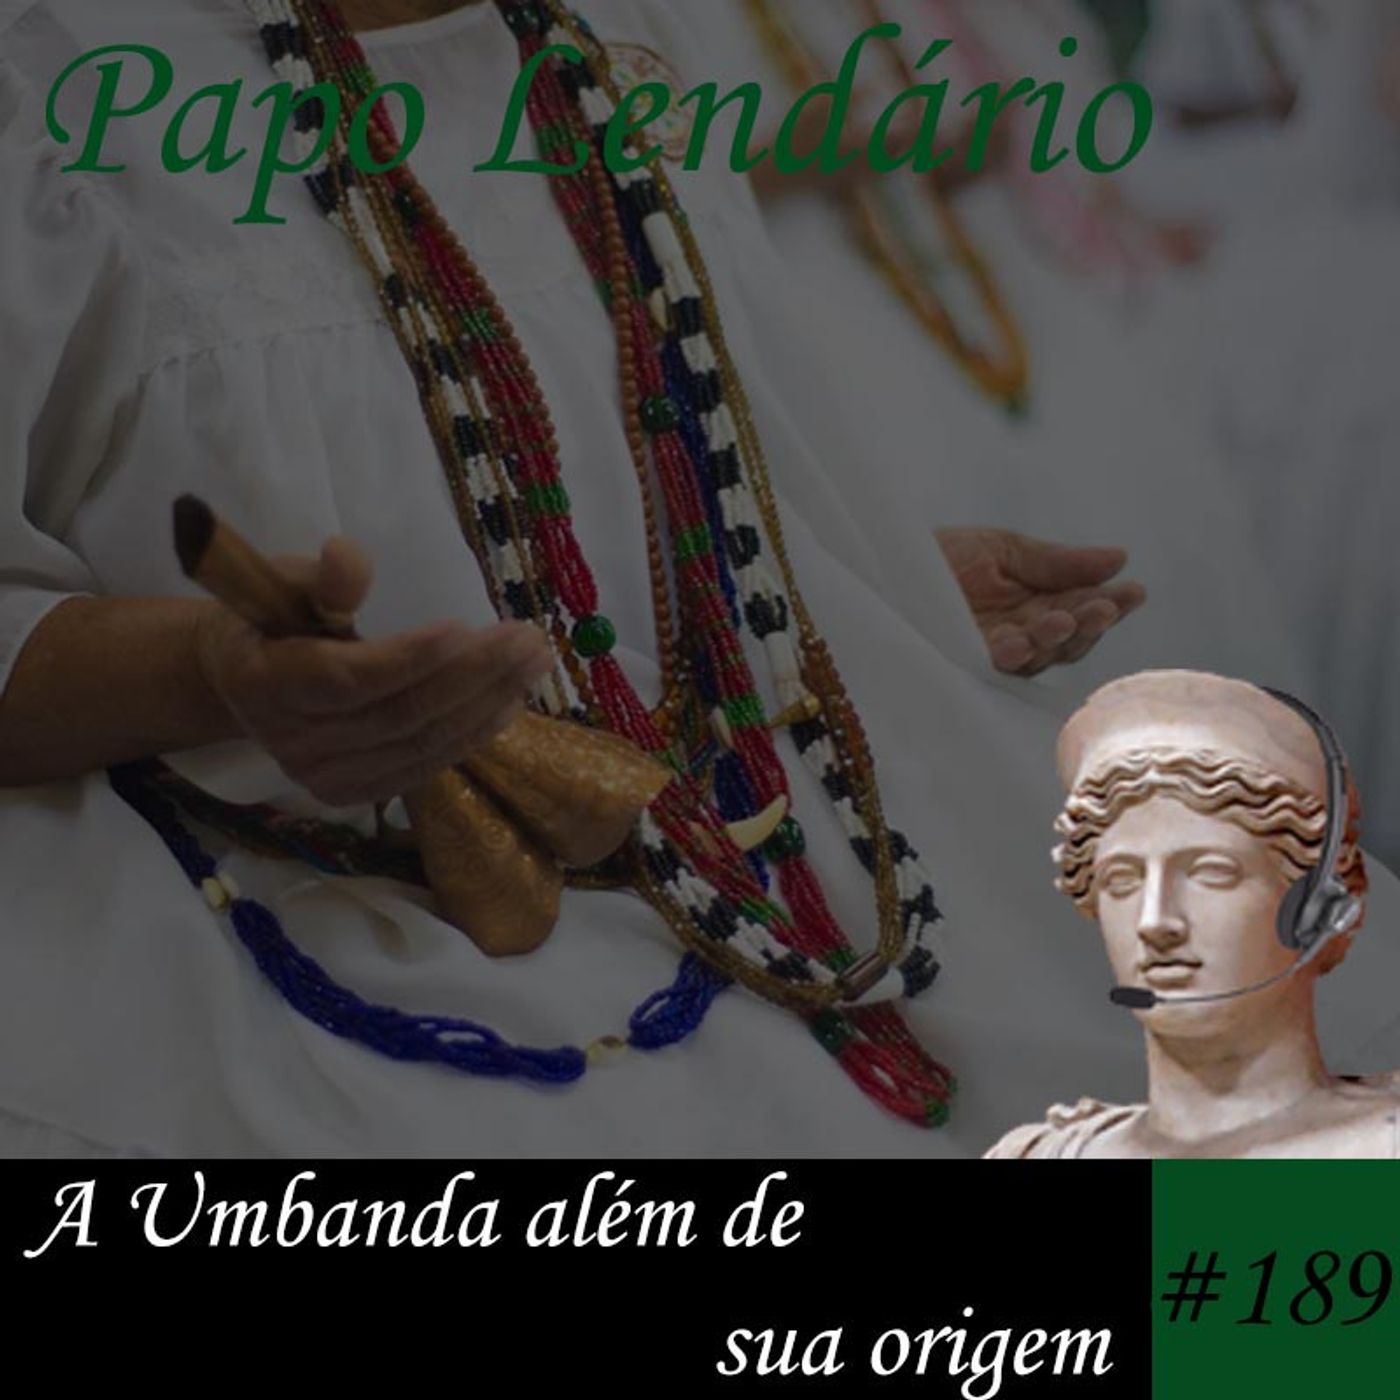 Papo Lendário #189 – A Umbanda além de sua origem